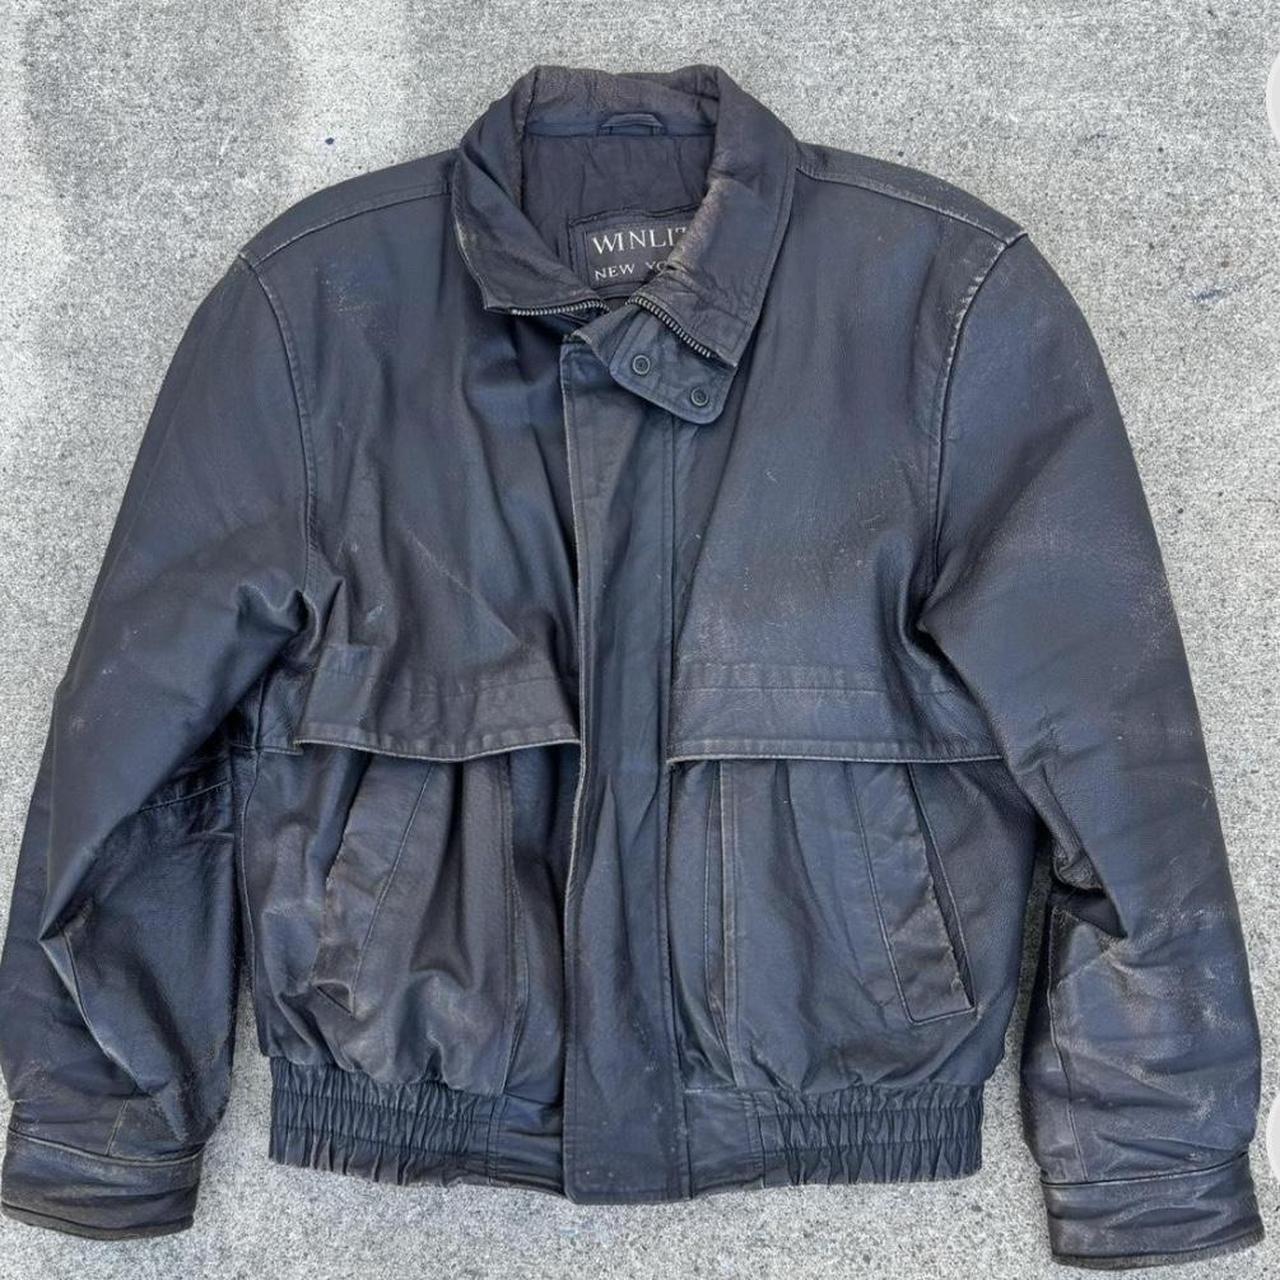 Vintage Leather Bomber Jacket Super dope style and... - Depop